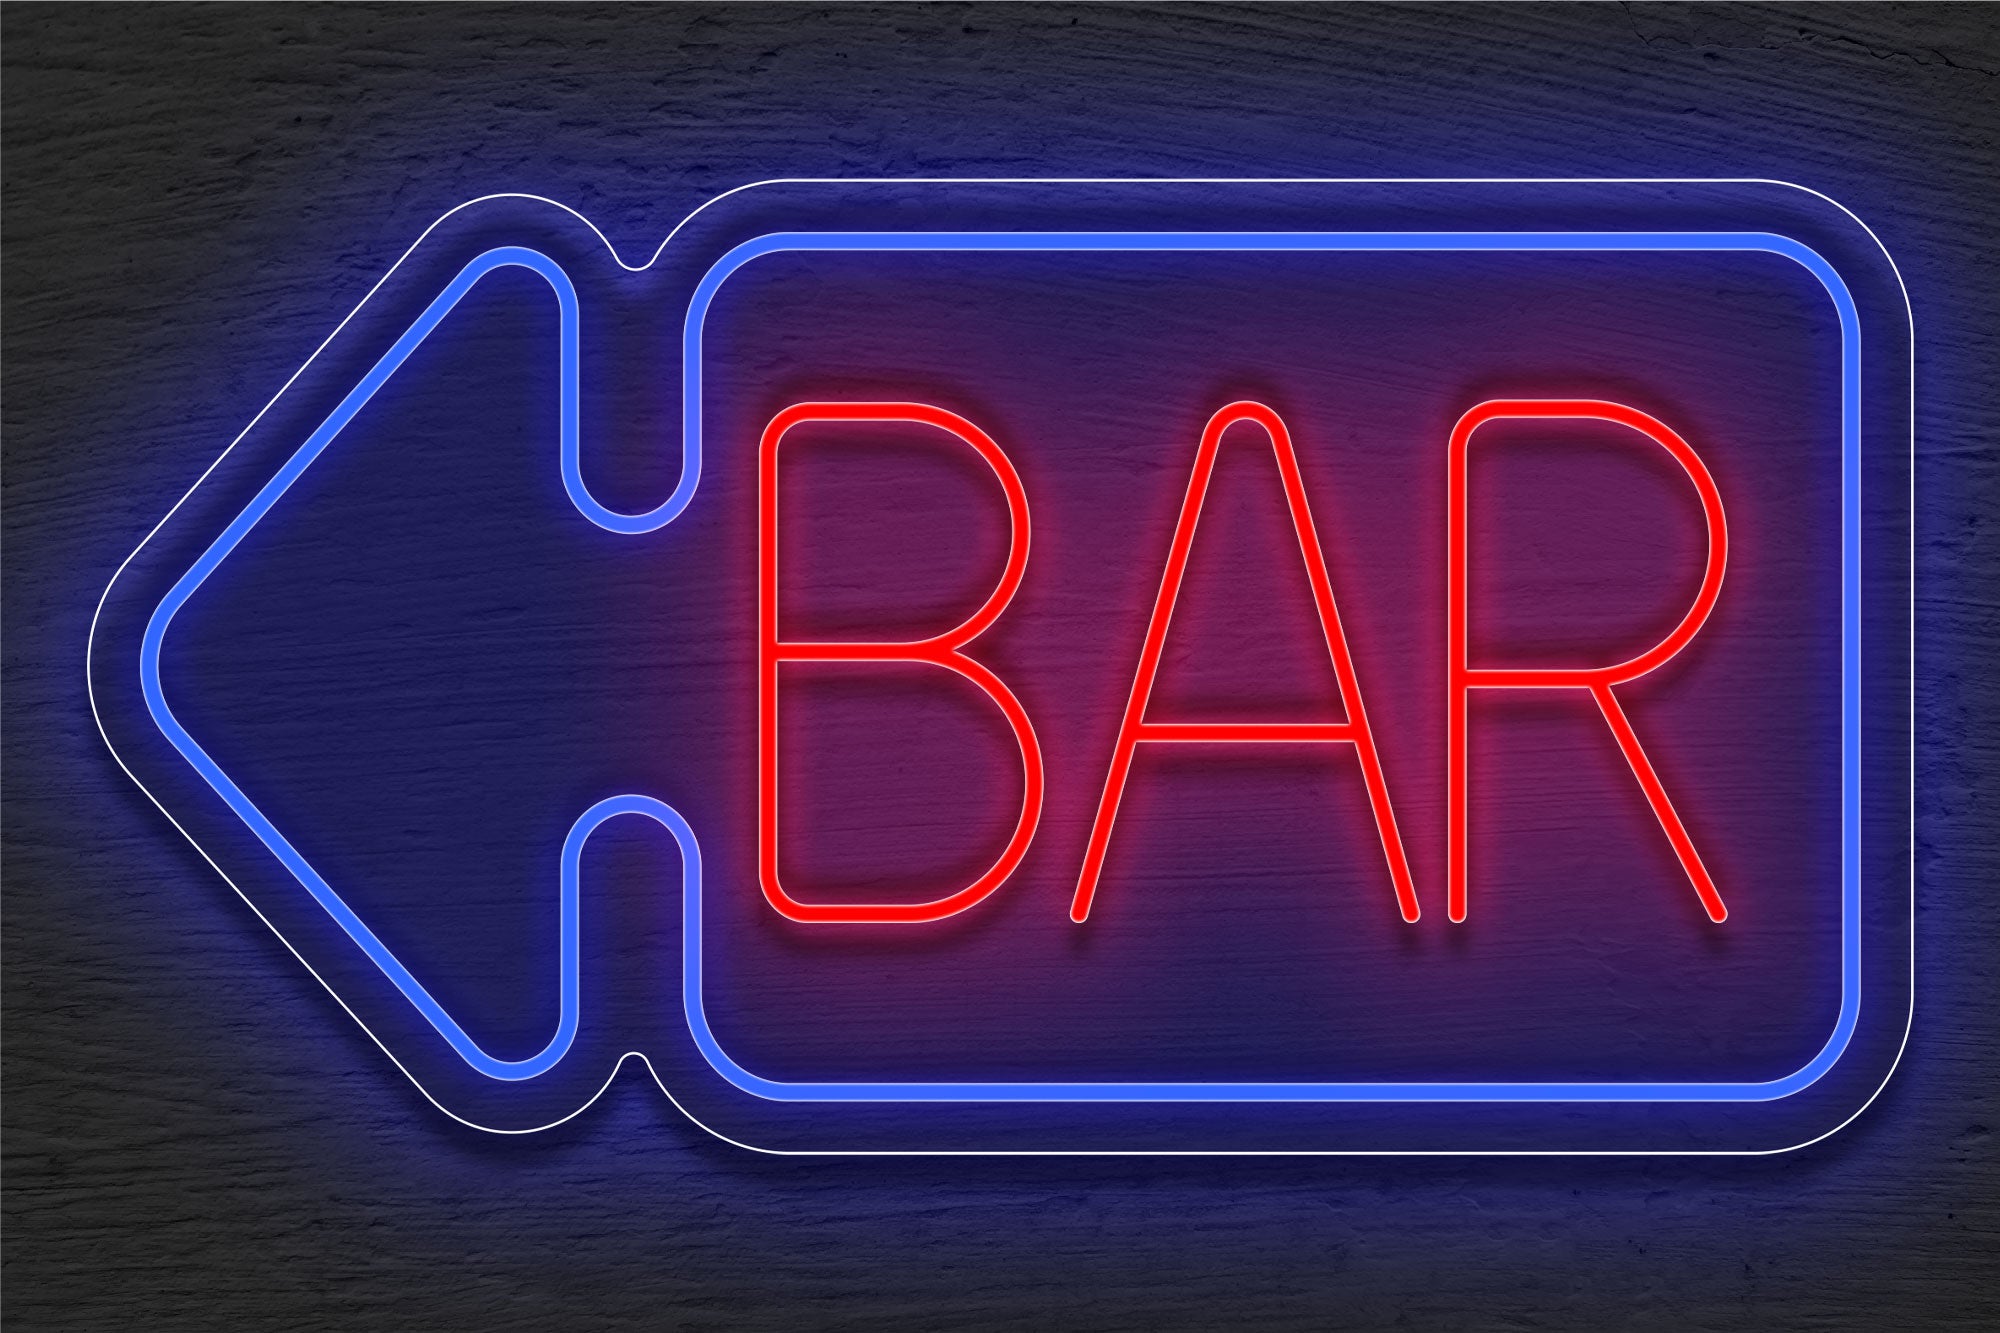 "BAR" with Arrow Border LED Neon Sign